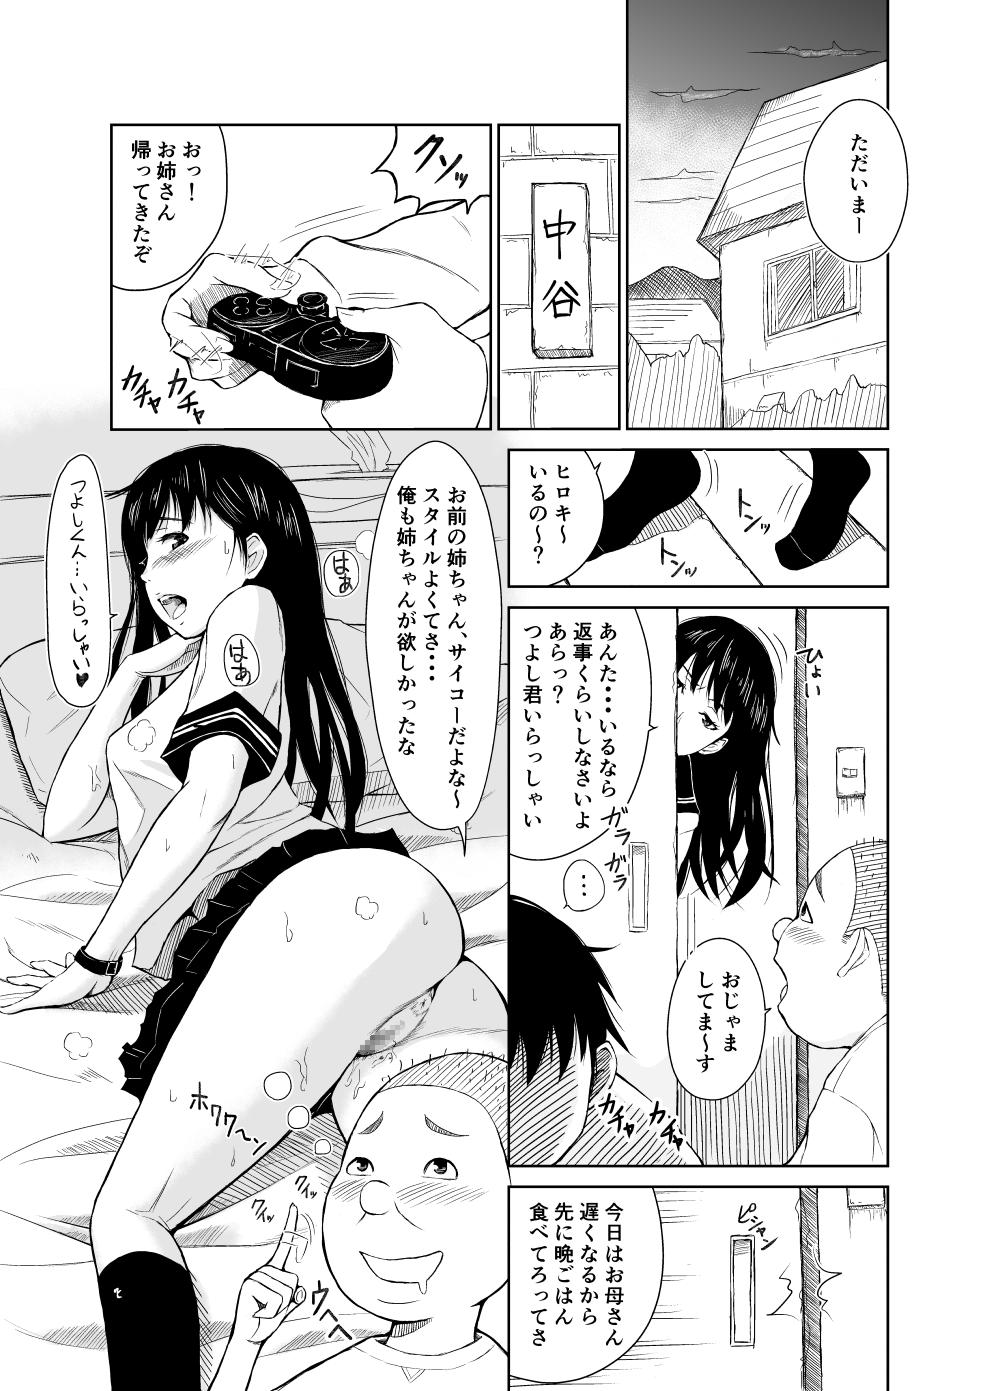 Nurse Chaotic Nakatani-ke Furry - Page 2